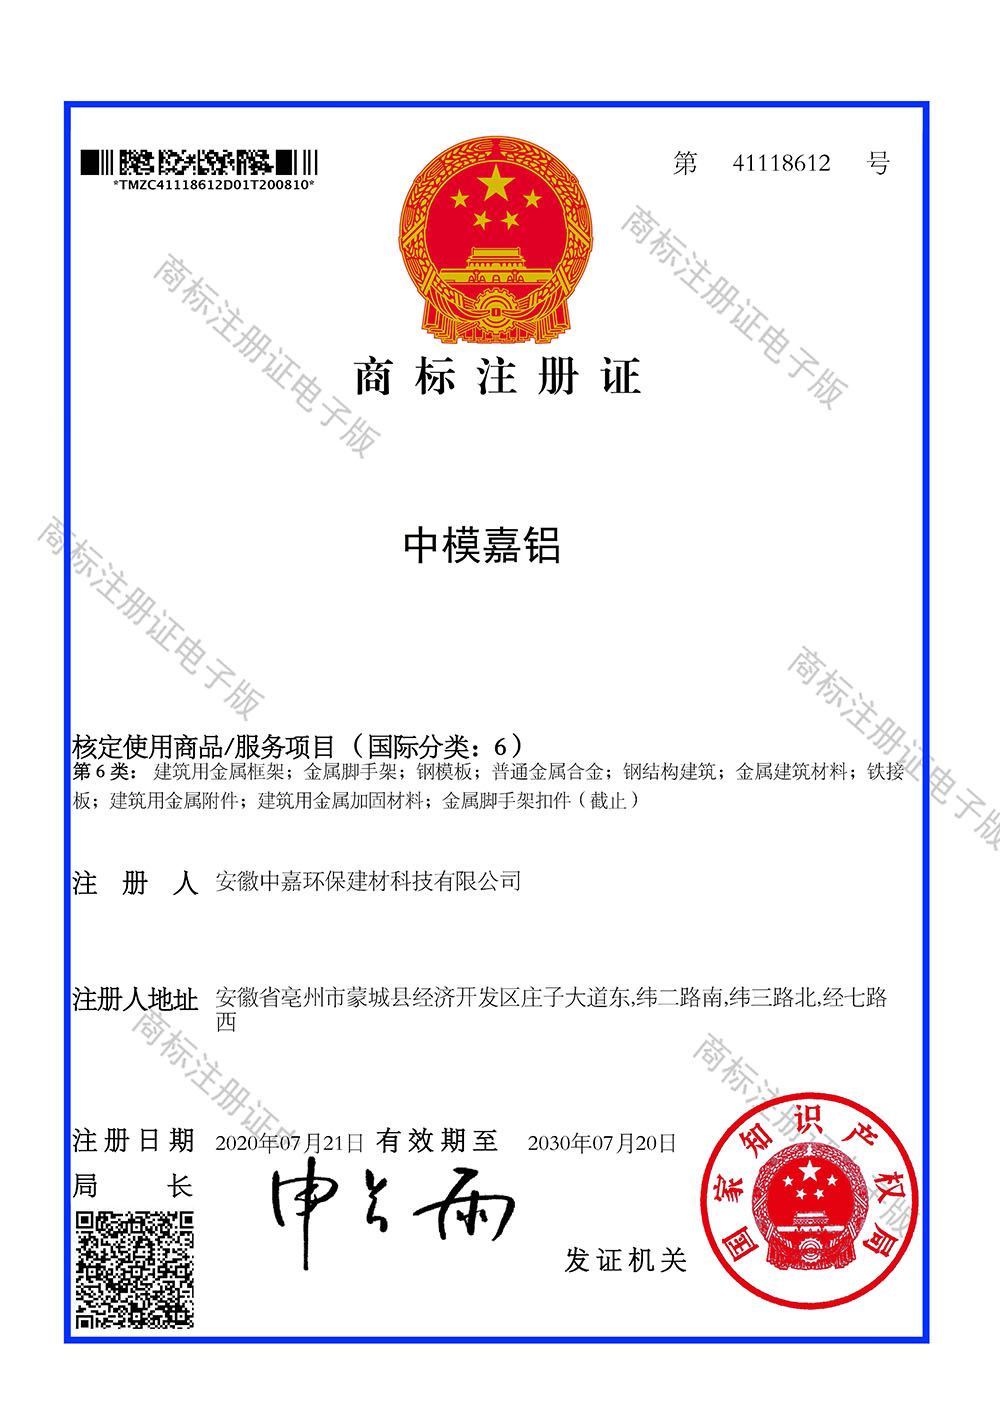 中模嘉铝商标证书(2)